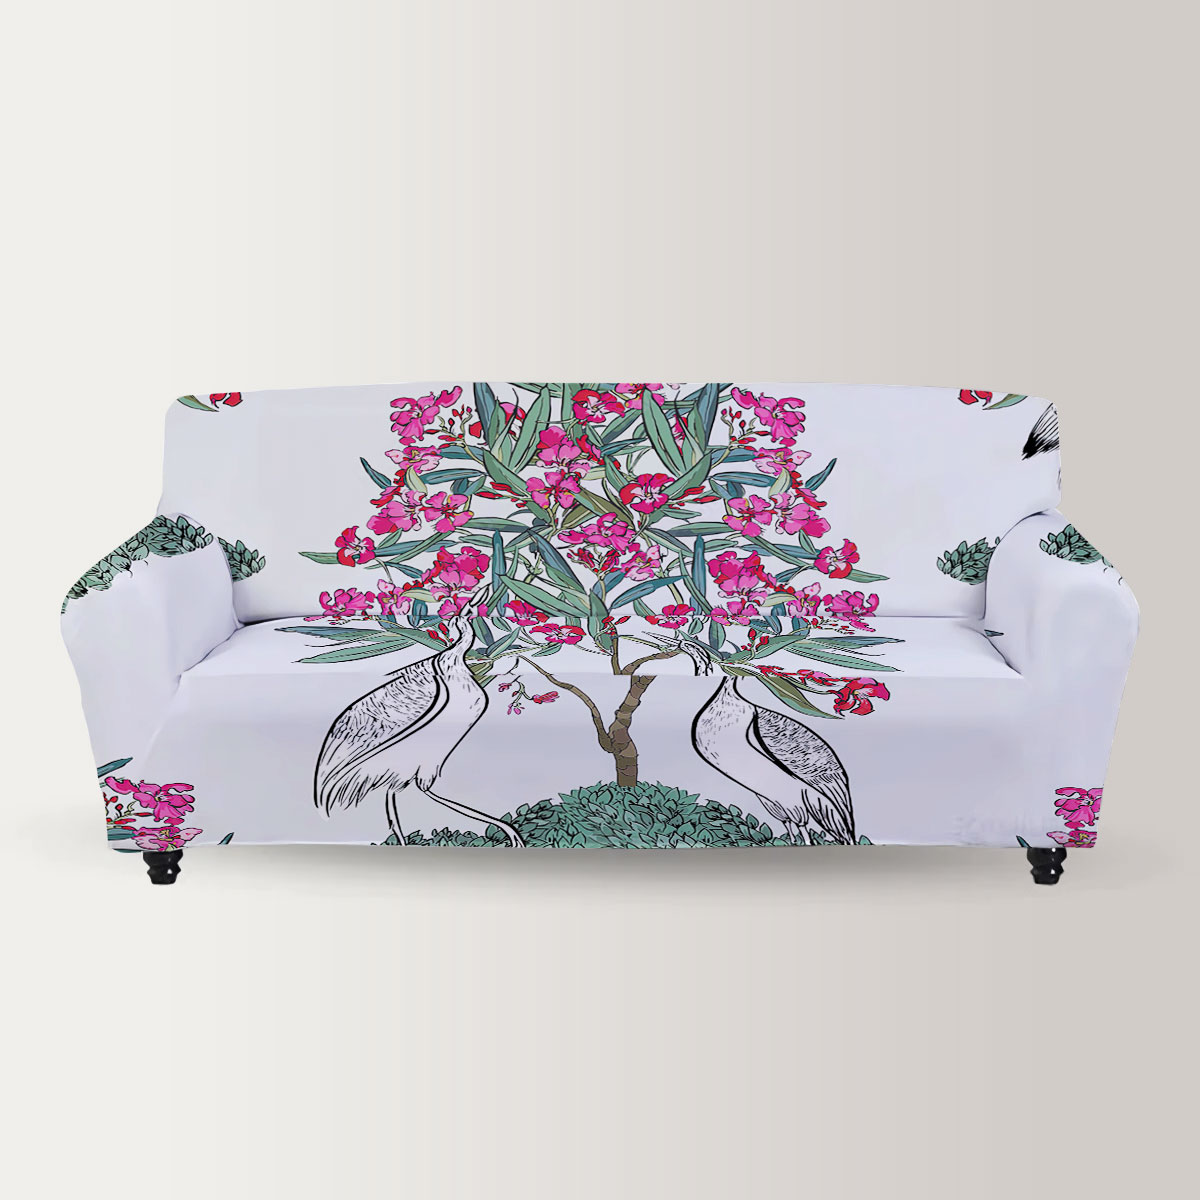 Heron Under Oleander Tree Sofa Cover